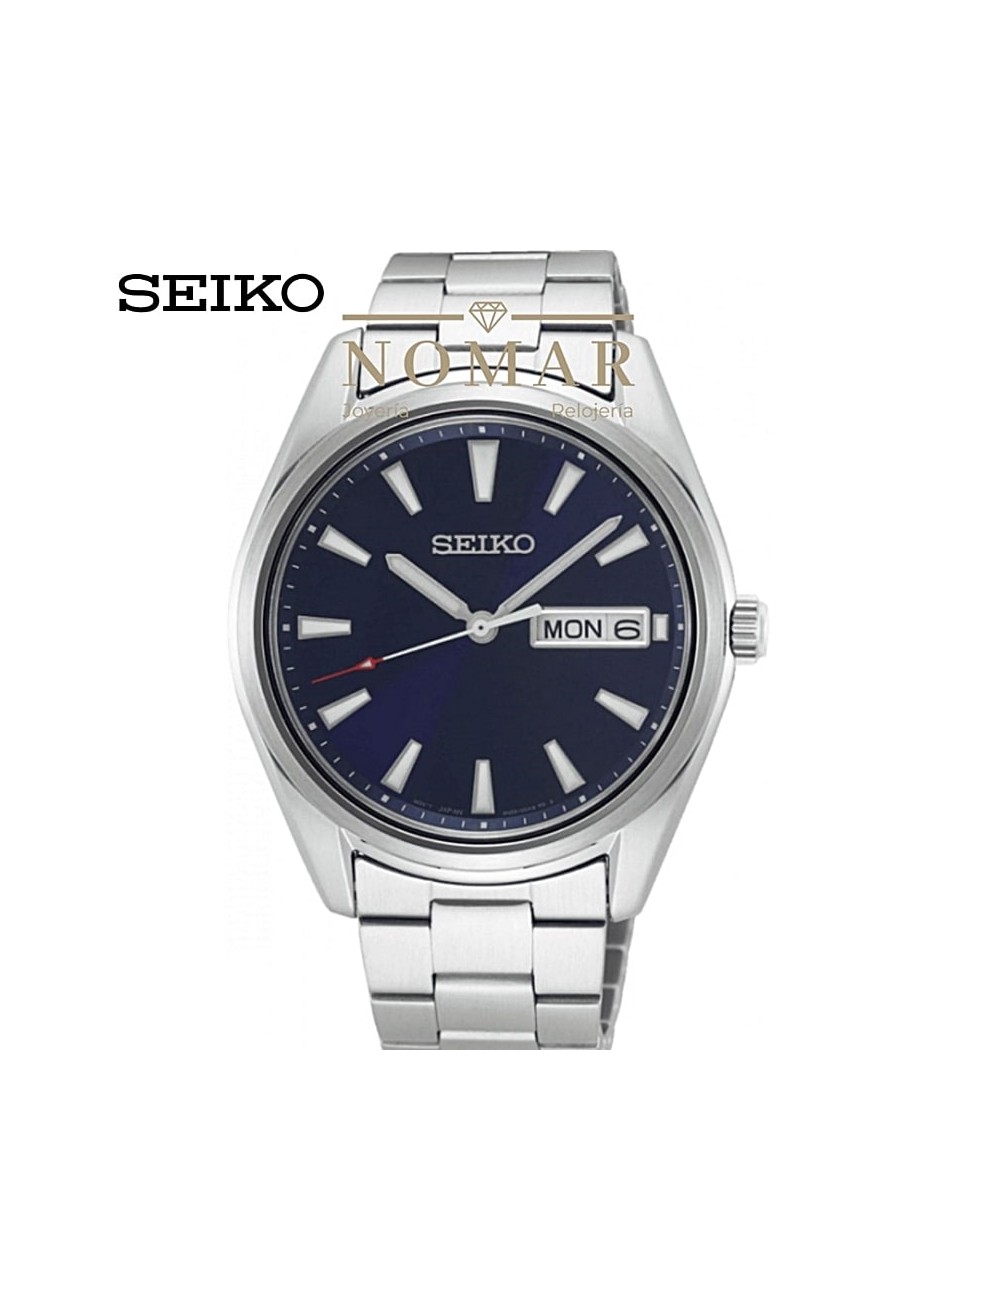 Reloj Seiko de hombre Neo Classic analógico acero doble calendario